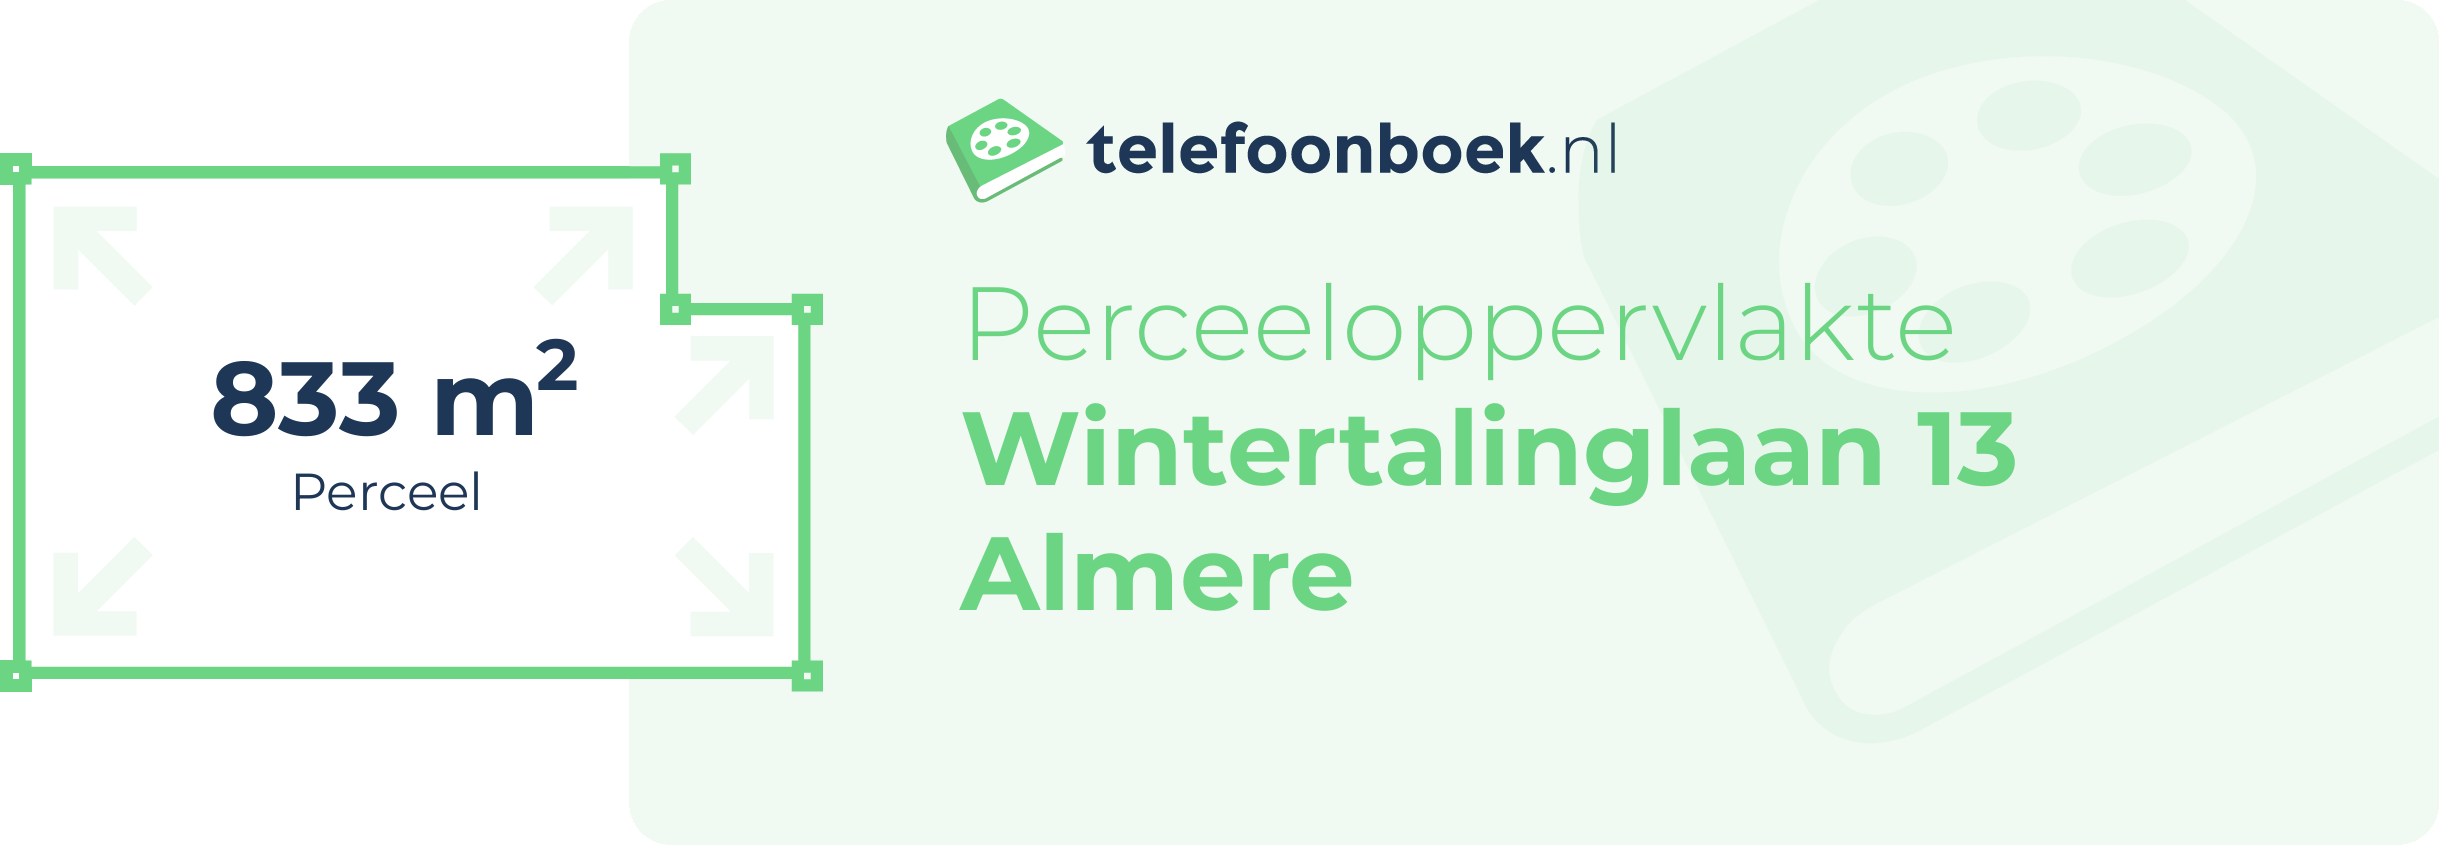 Perceeloppervlakte Wintertalinglaan 13 Almere